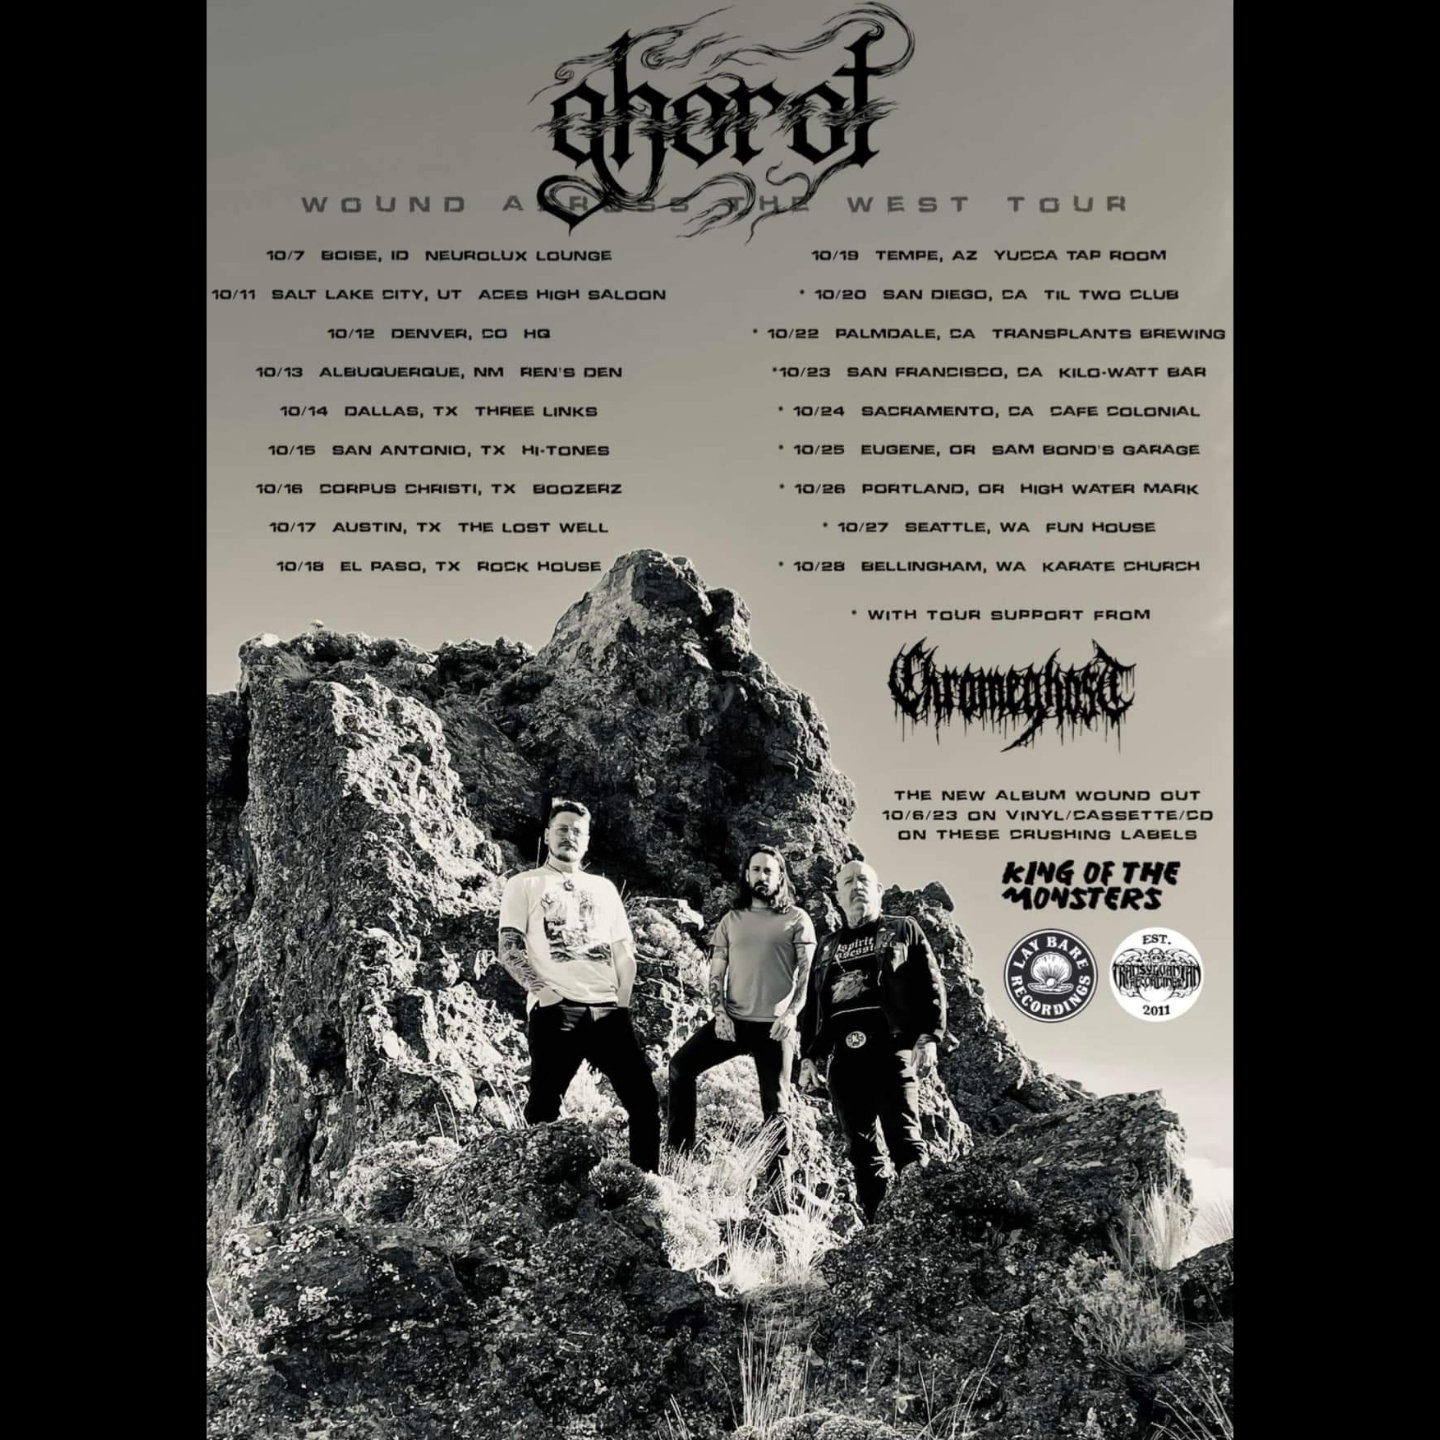 Ghorot tour poster